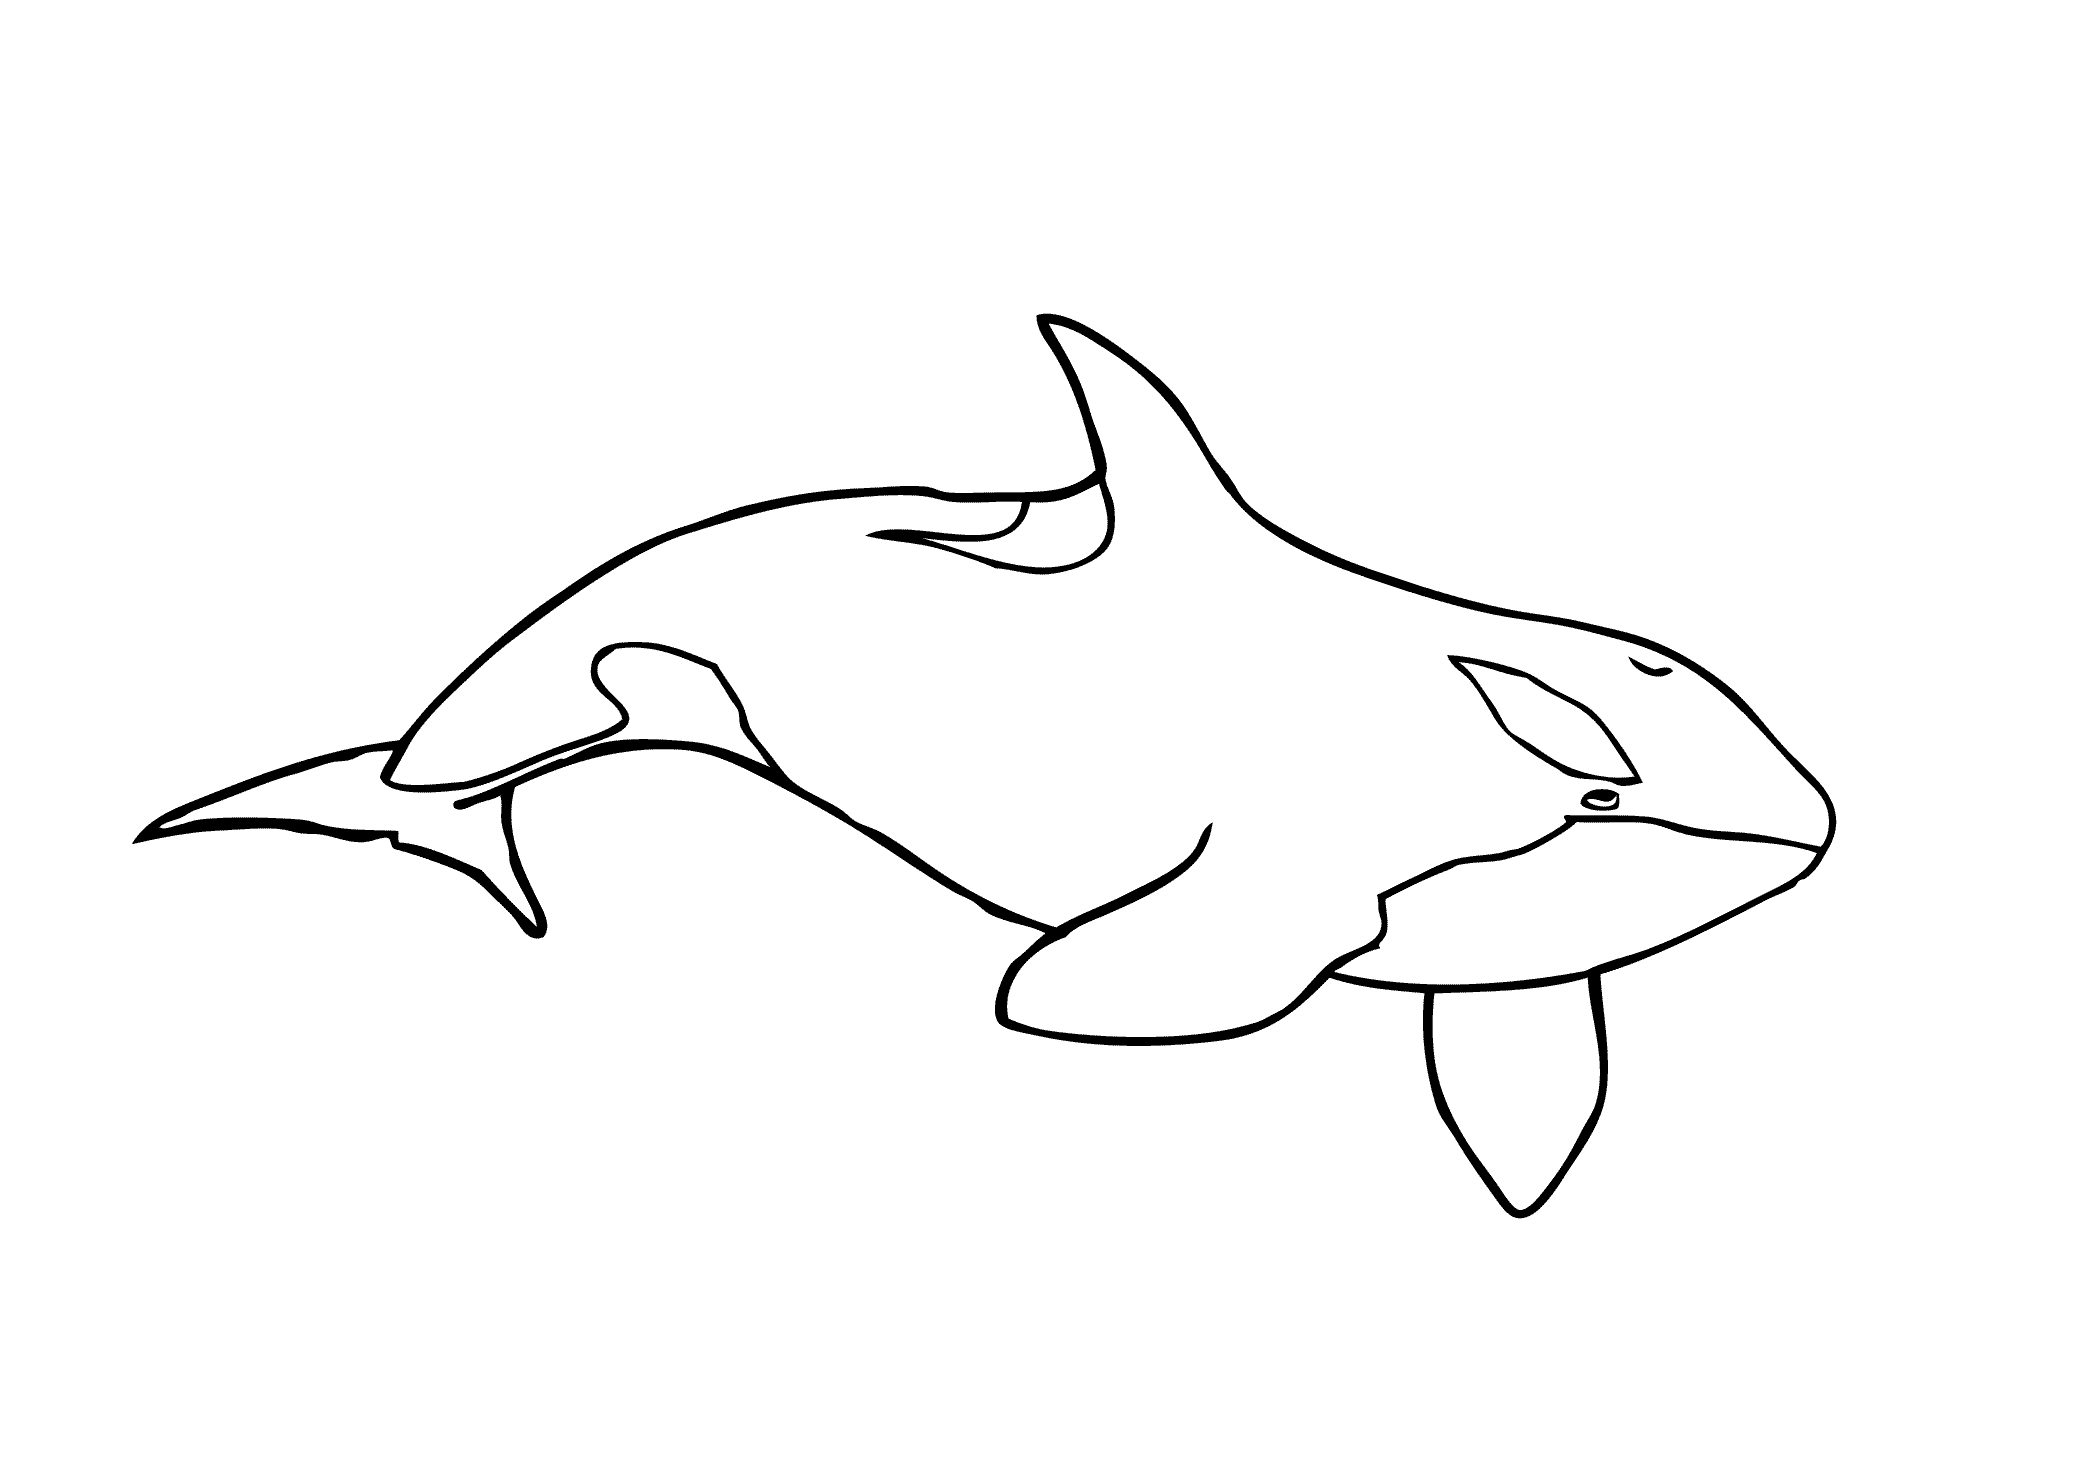 Apprendre à dessiner une orque en 3 étapes